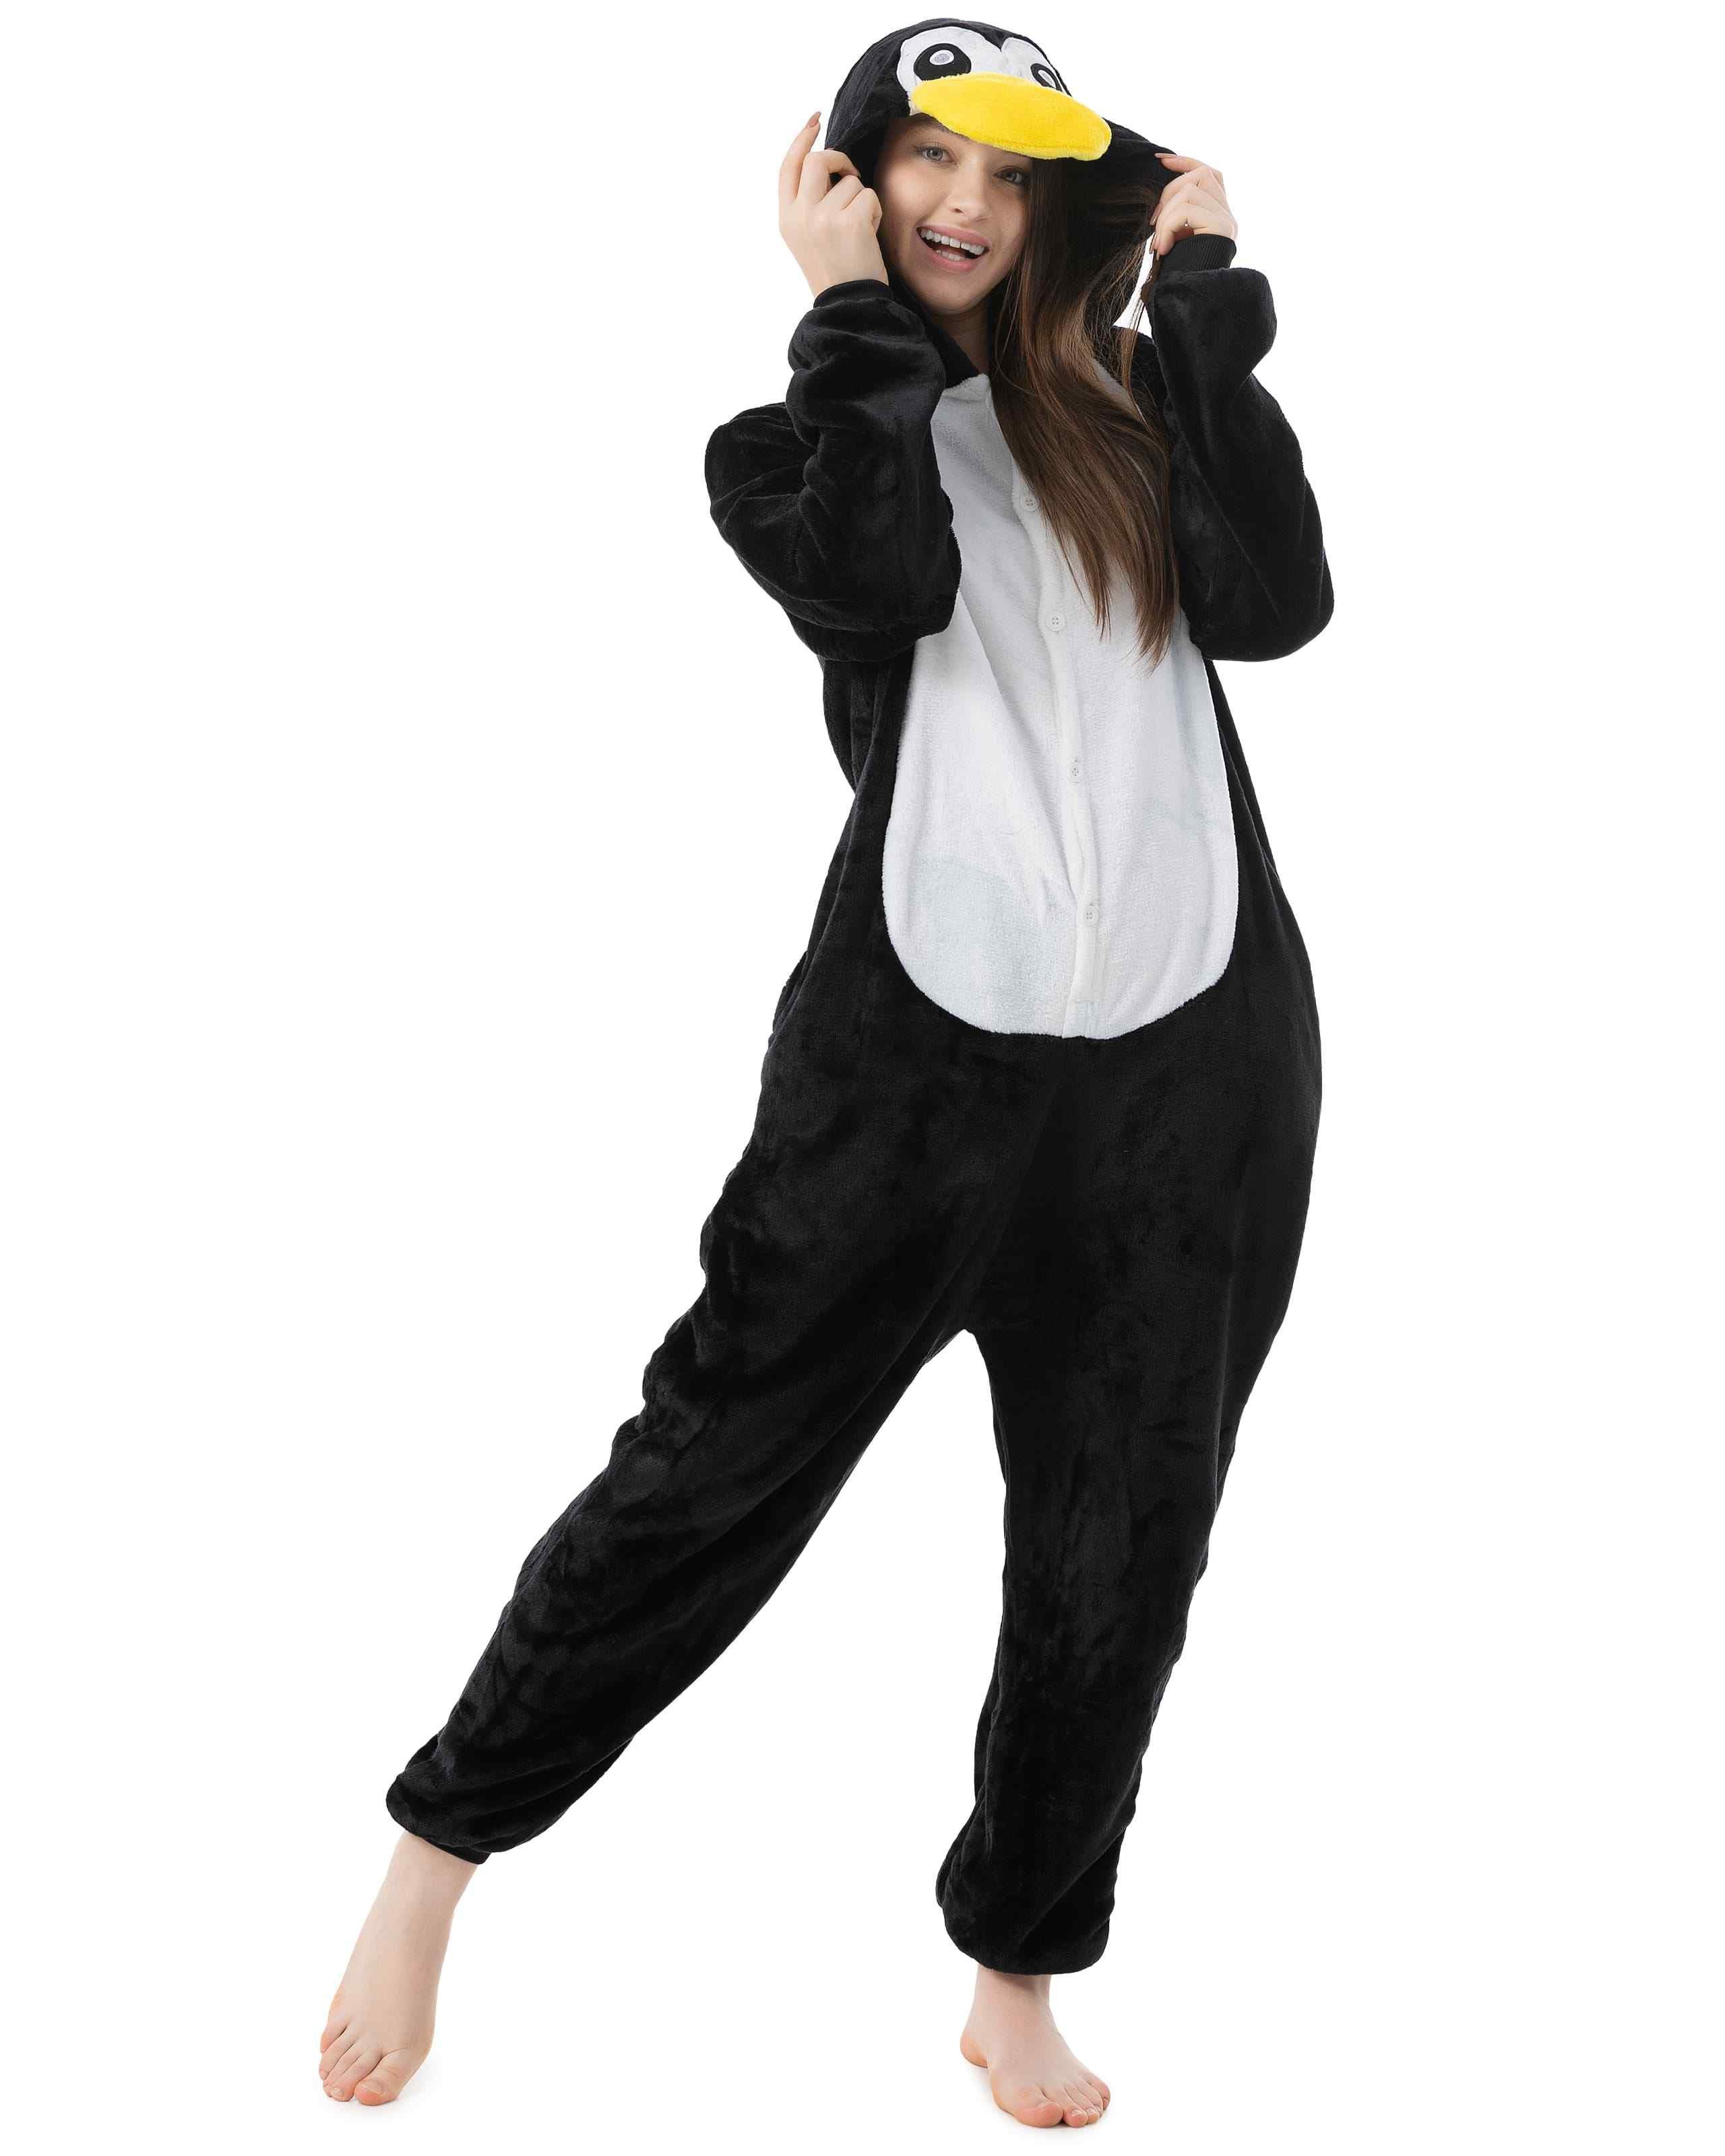 Katara Partyanzug Meerestiere Jumpsuit Kostüm für Erwachsene S-XL, Karneval - Kostüm, Kigurumi - Pinguin schwarz weiß M (155-165cm)